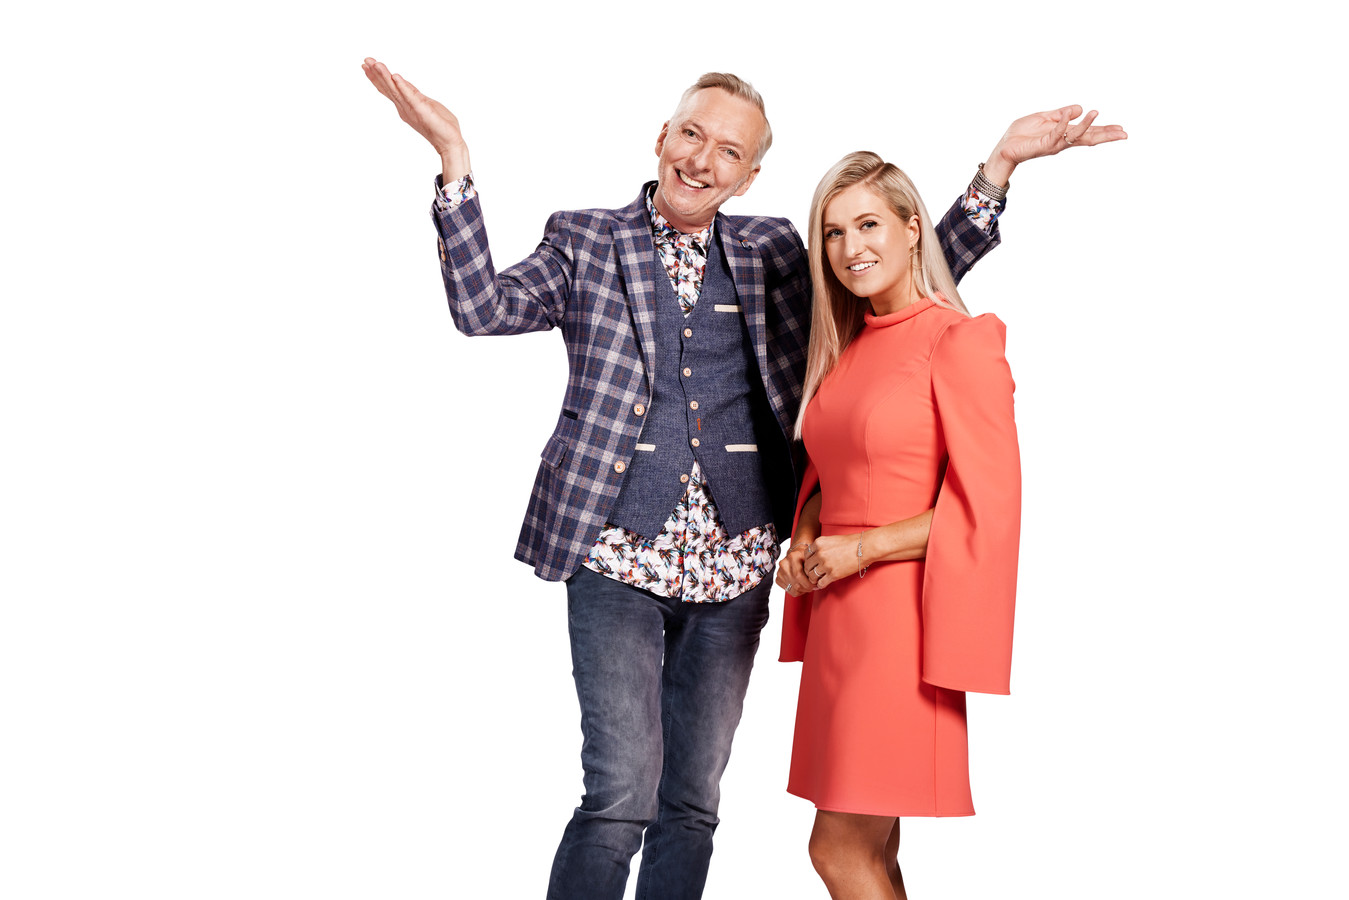 Martien Meiland en Britt Dekker presenteren vanavond First & Last op SBS6.